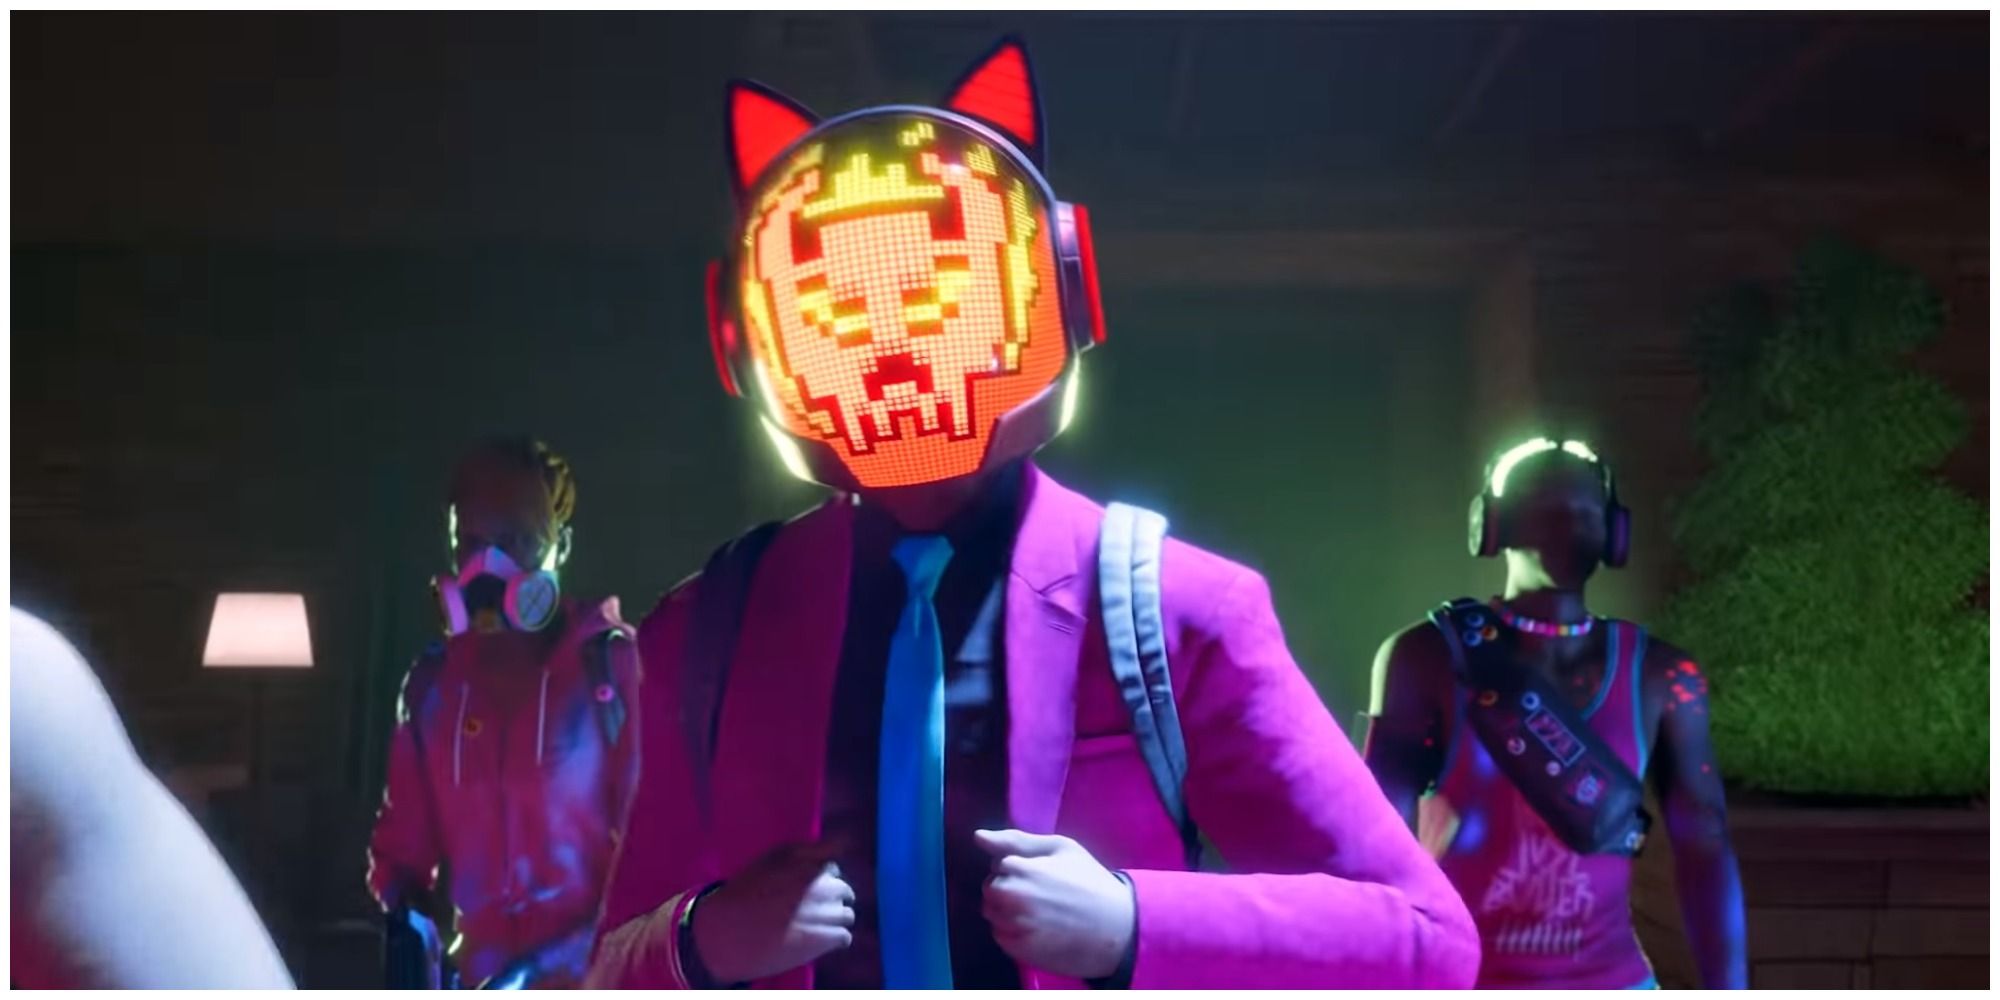 SAINTS ROW Idol in pink suit and helmet